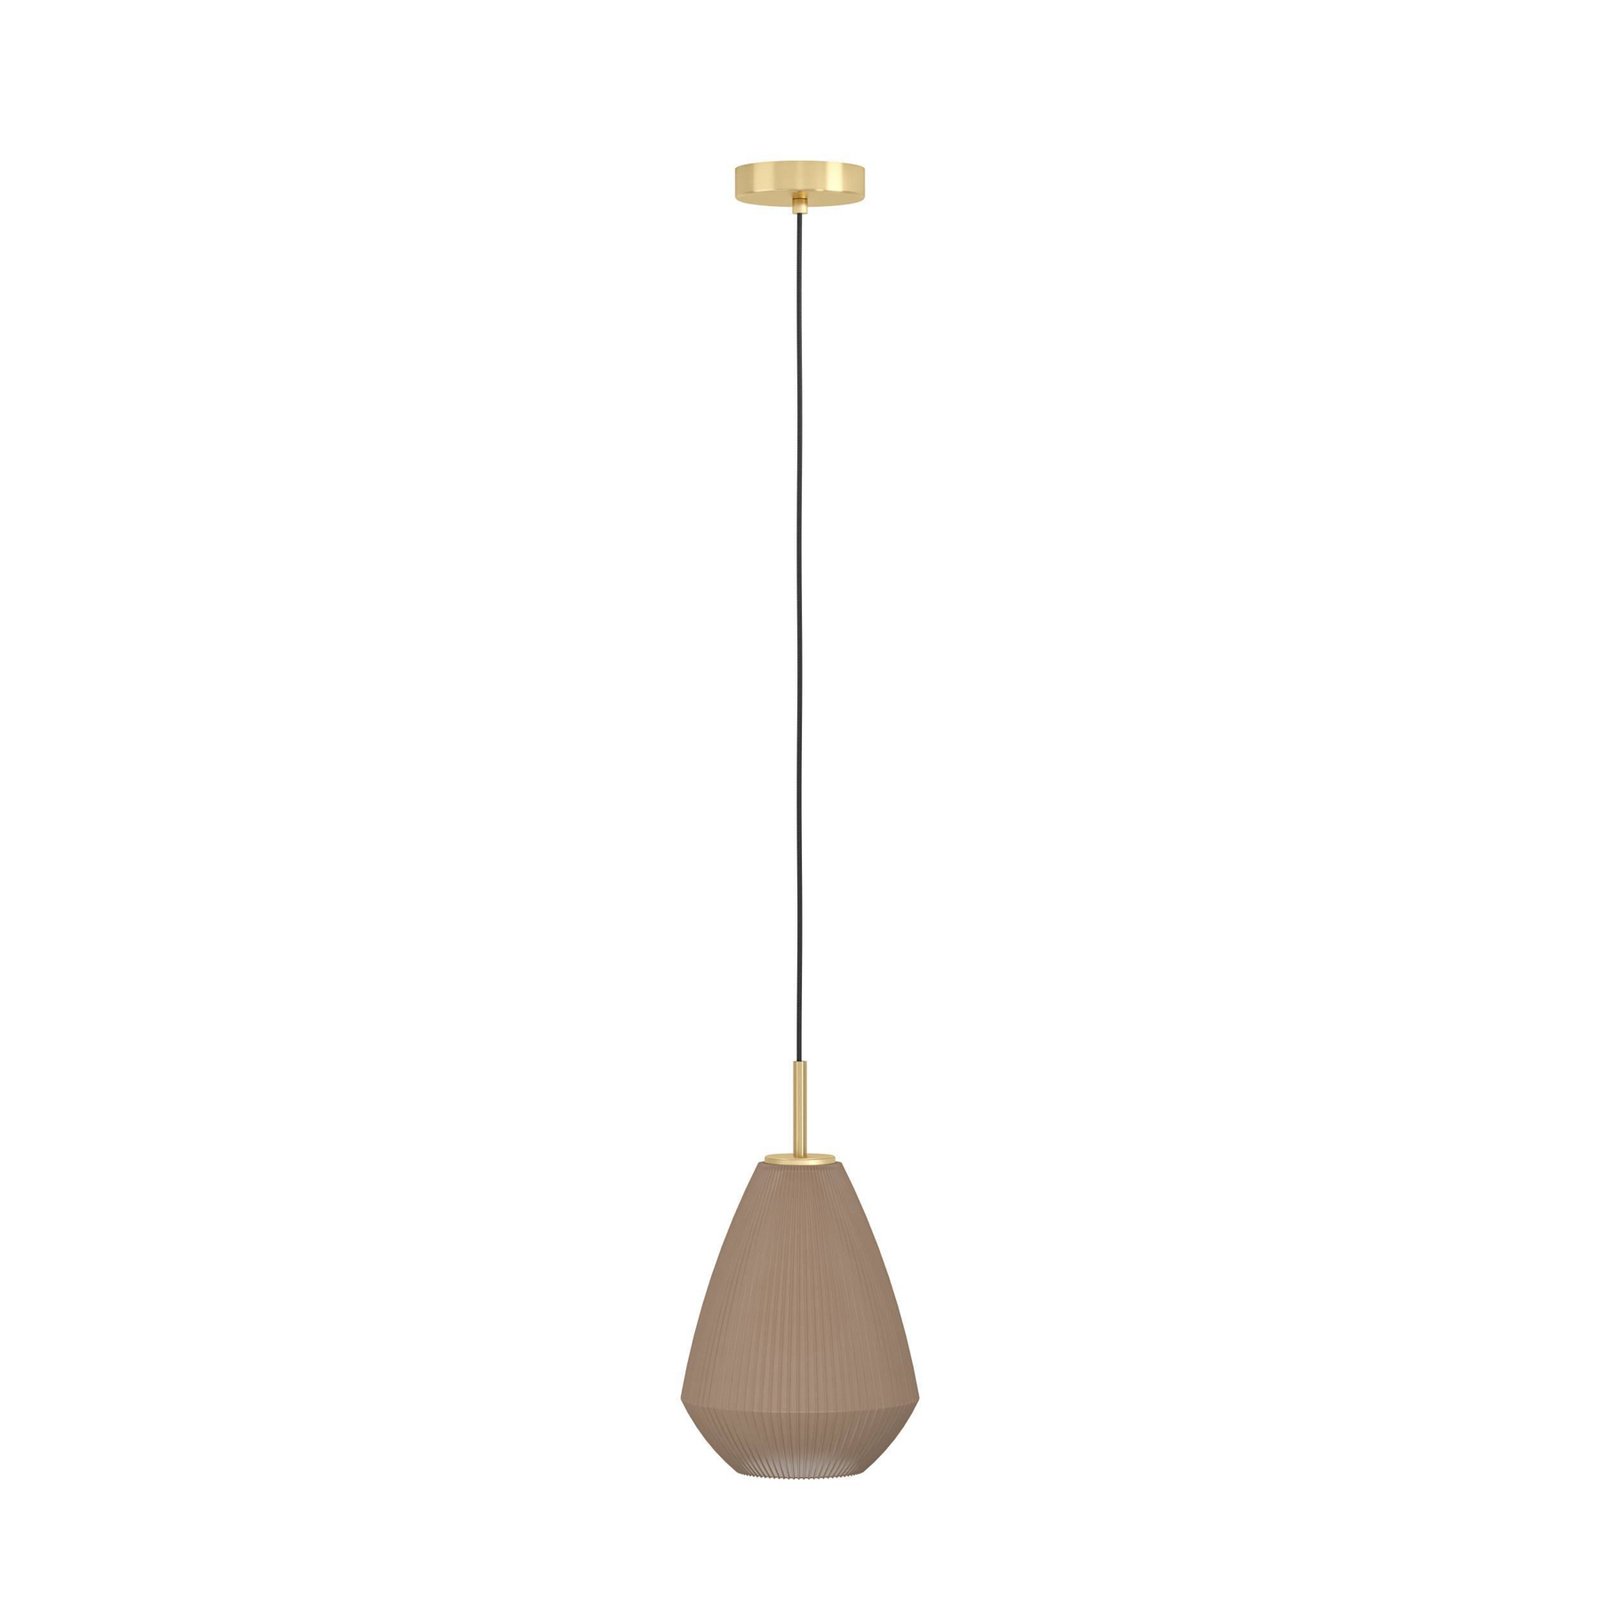 Висяща лампа Caprarola, Ø 20 cm, пясъчен цвят, стъкло/метал